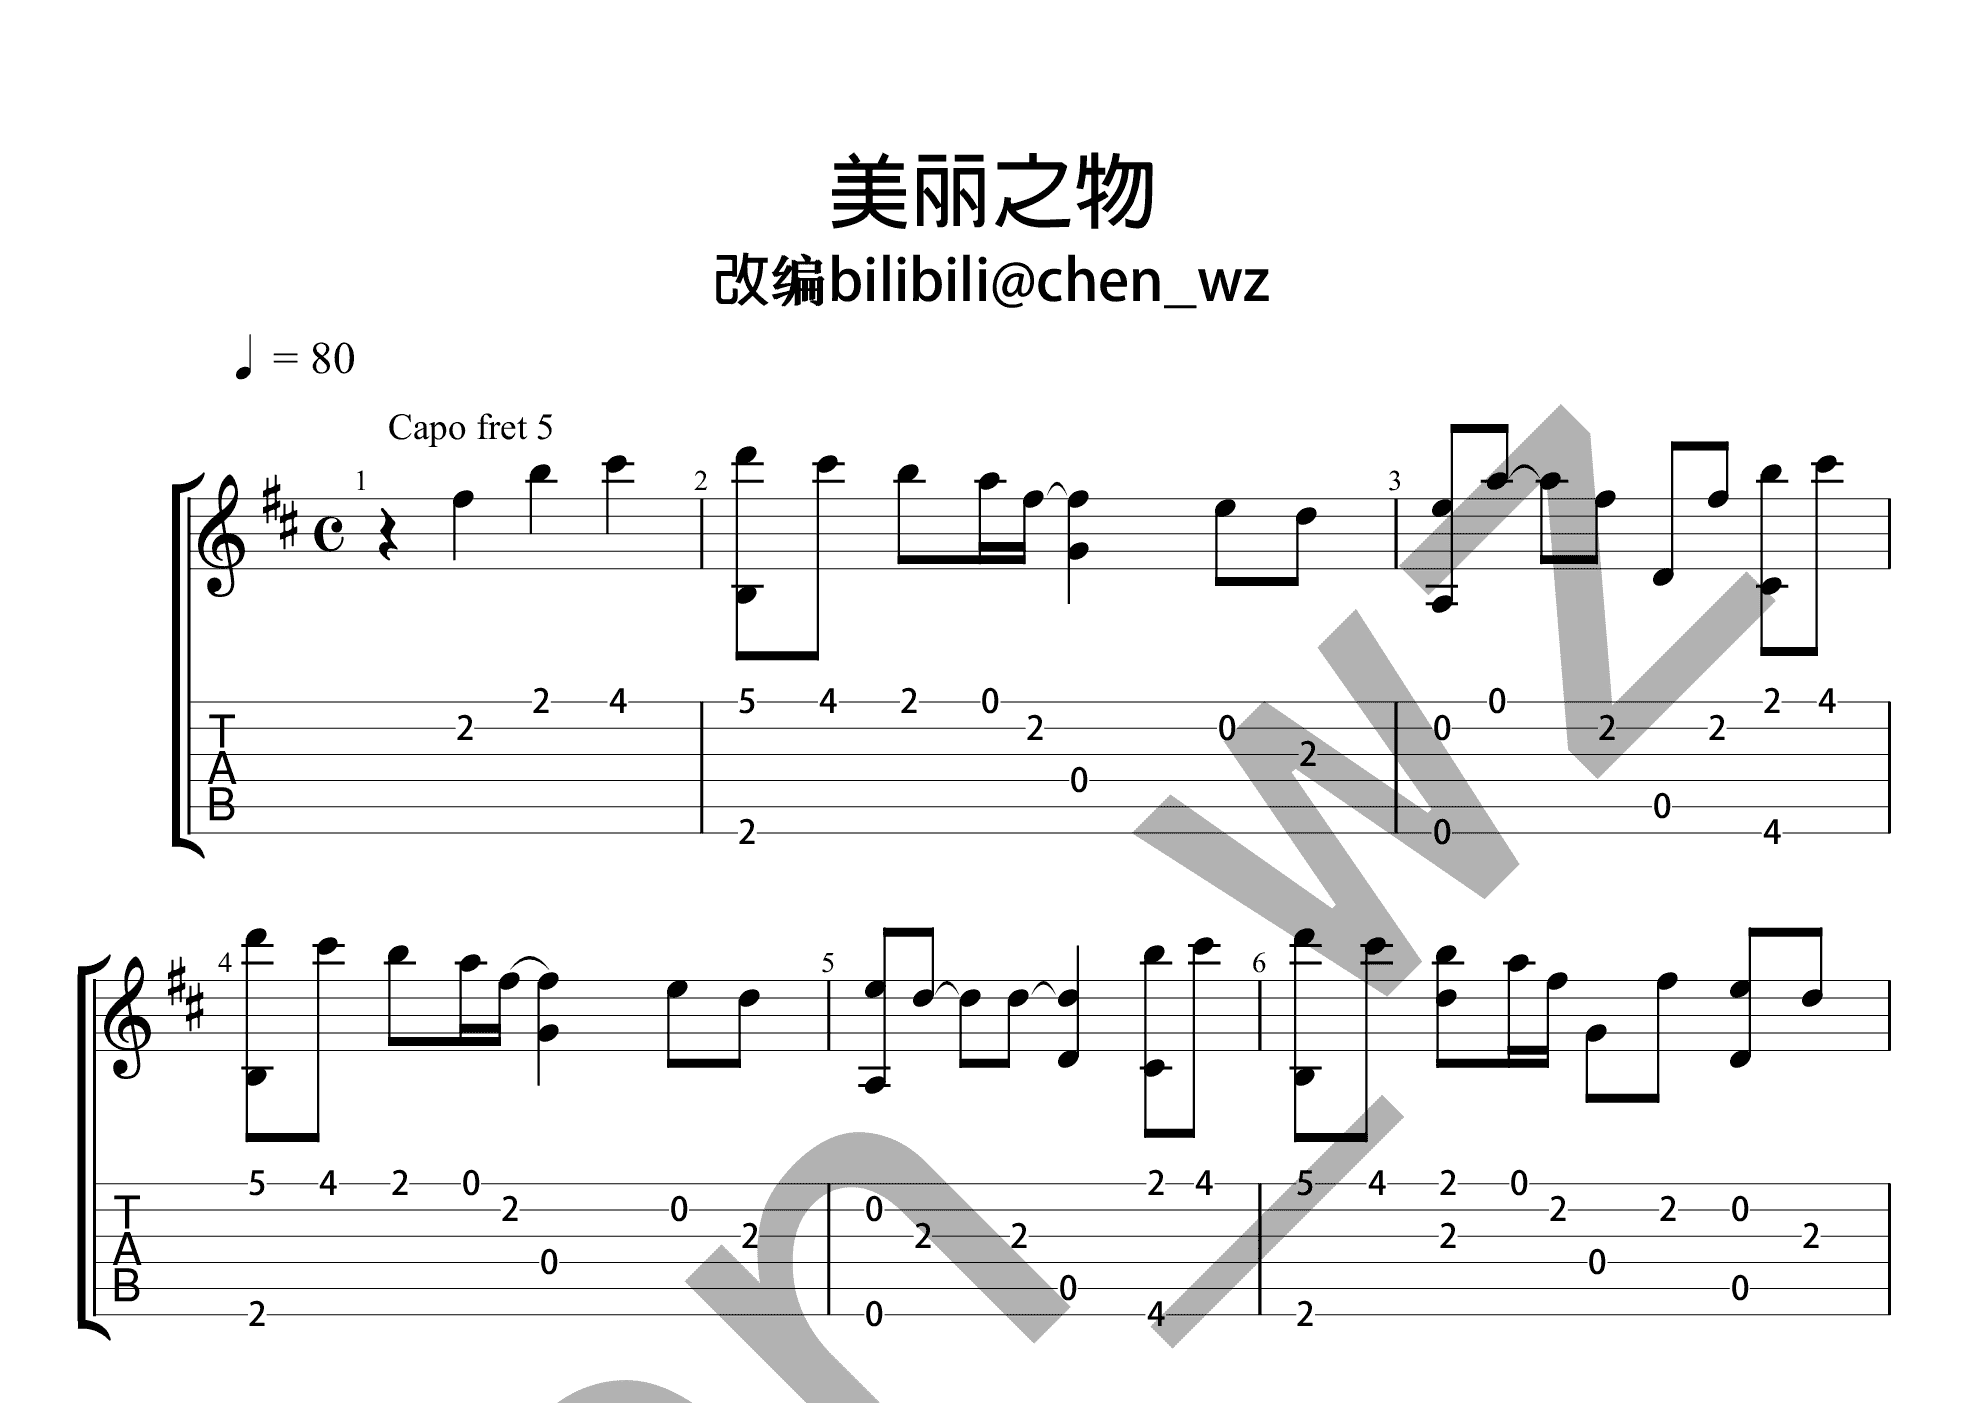 美丽之物-美しきもの-Sound Horizon双手简谱预览5-钢琴谱文件（五线谱、双手简谱、数字谱、Midi、PDF）免费下载